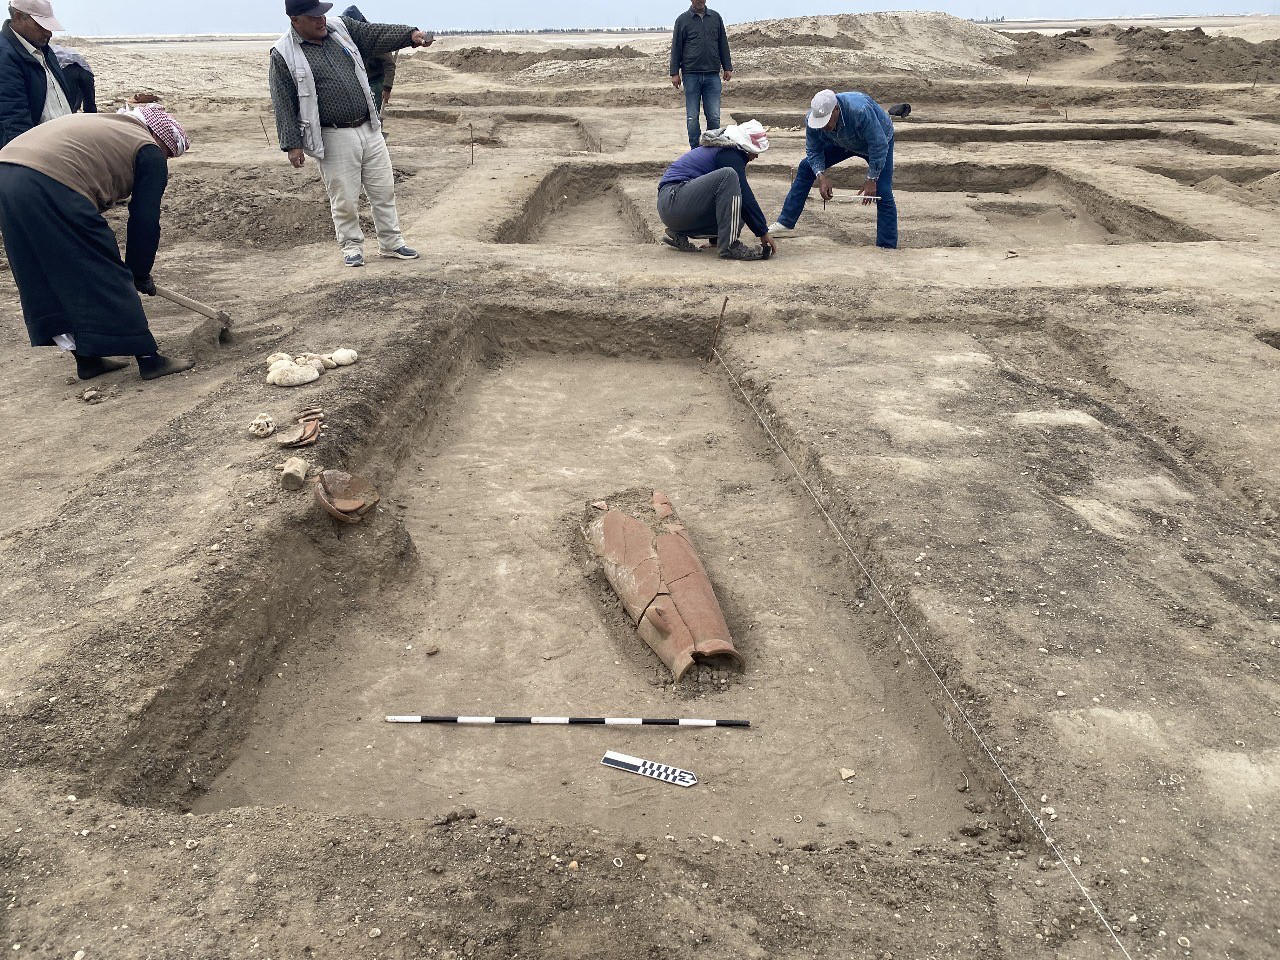 اكتشاف أثري في شمال سيناء عبارة عن بقايا مبنى من الطوب كان يستخدم استراحة في عهد الملك تحتمس الثالث